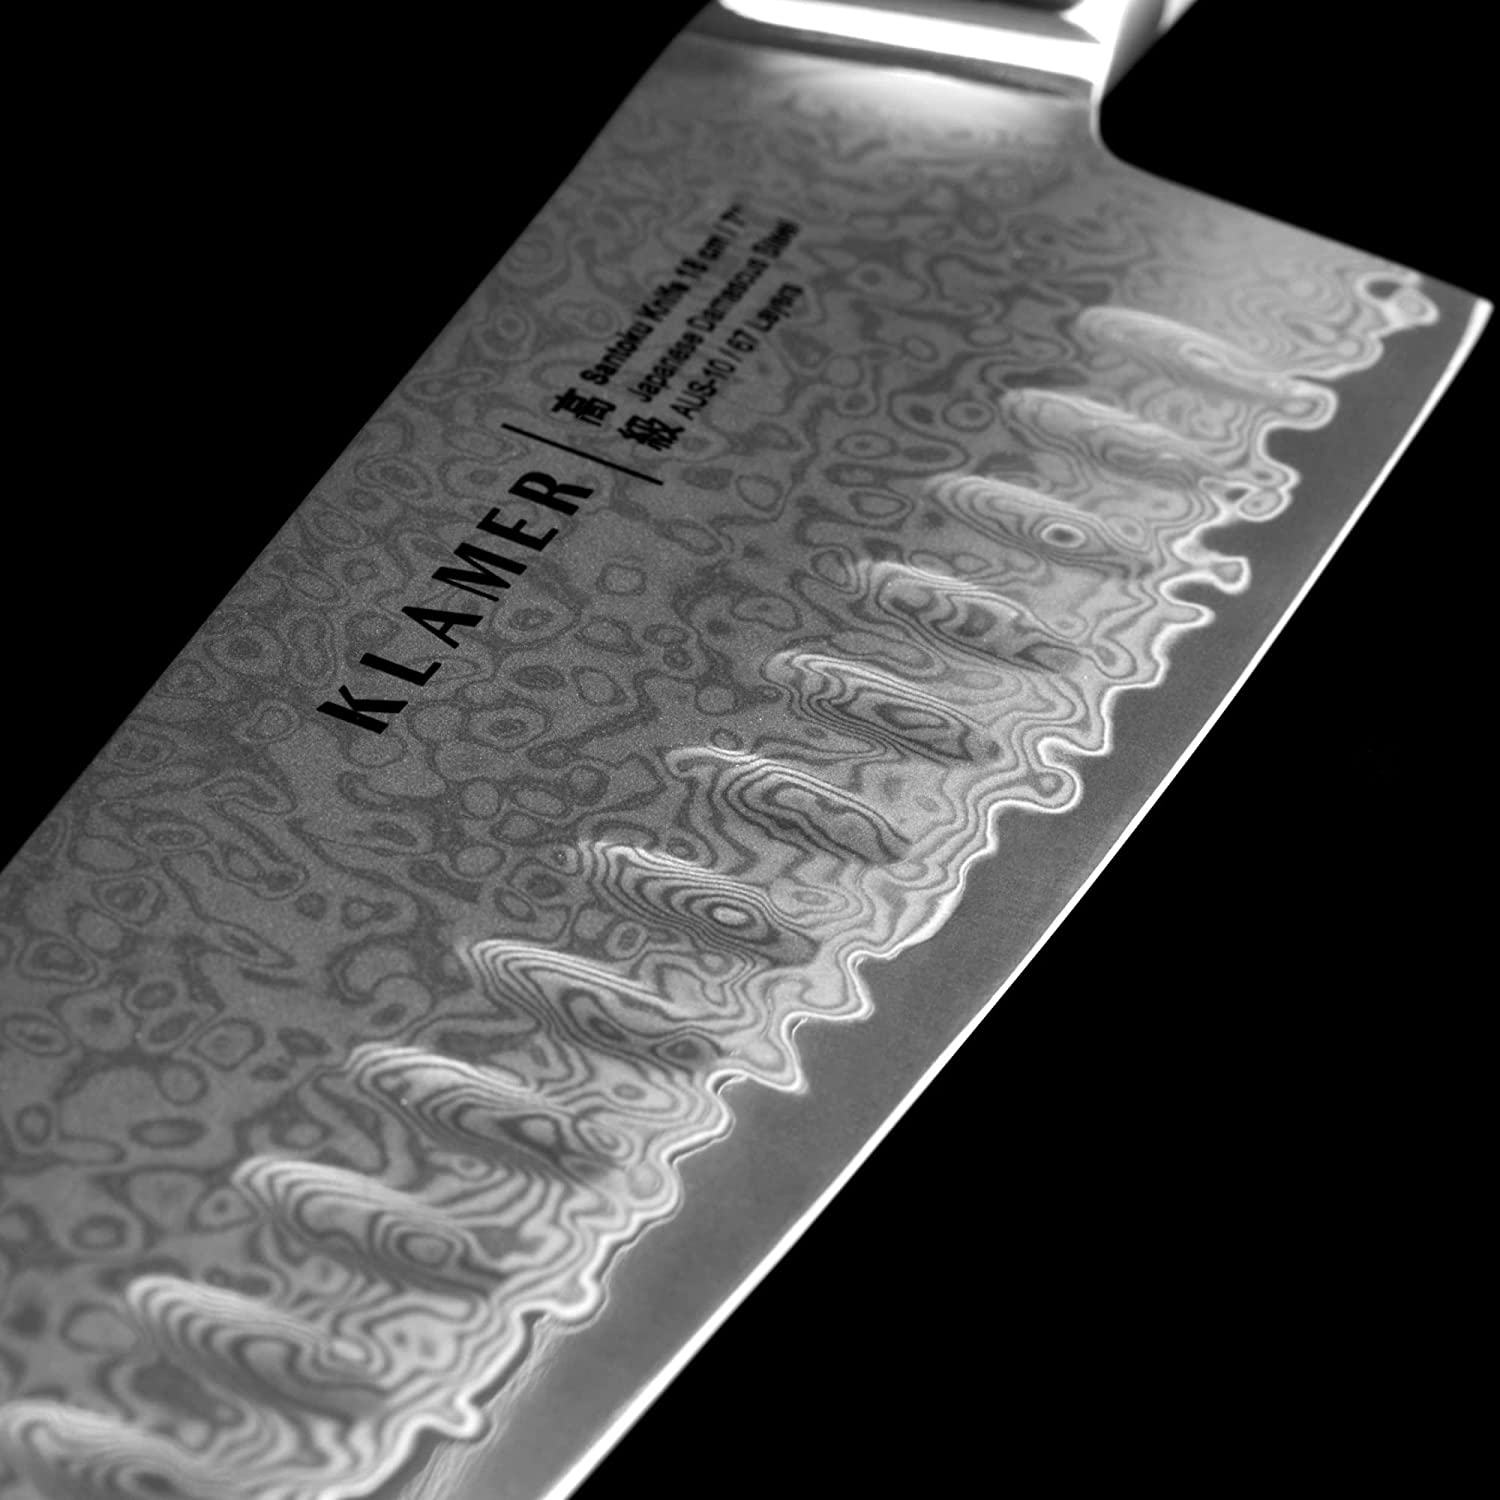 Santoku KLAMER mit Messer Olivenholz Damastmesser 18cm